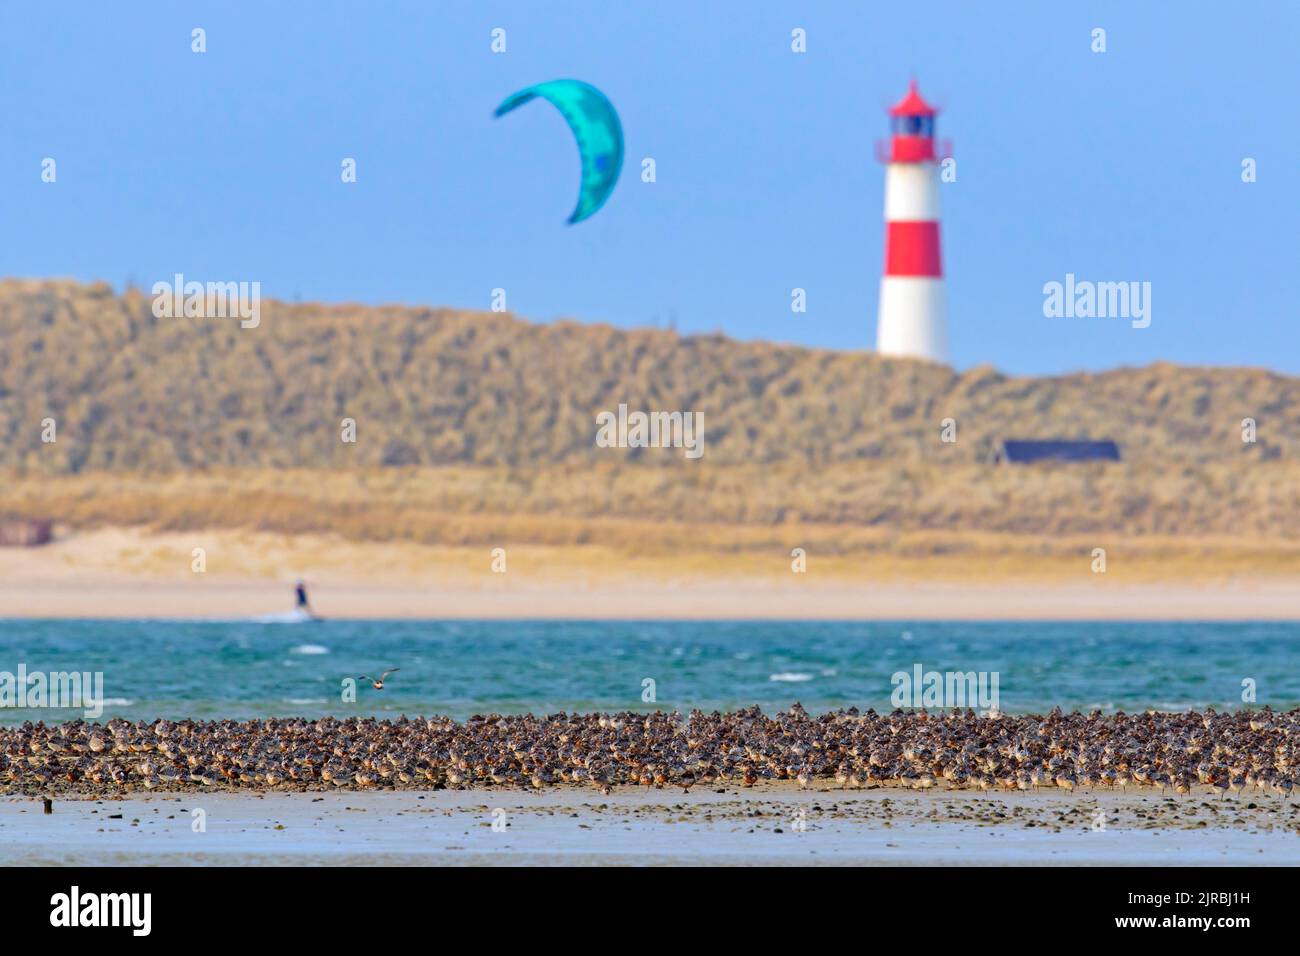 Gregge di godwits a coda di sbarra (Limosa laponica) e nodi rossi che riposano sul banco di sabbia e sul faro sull'isola Sylt in primavera, Nordfriesland, Germania Foto Stock